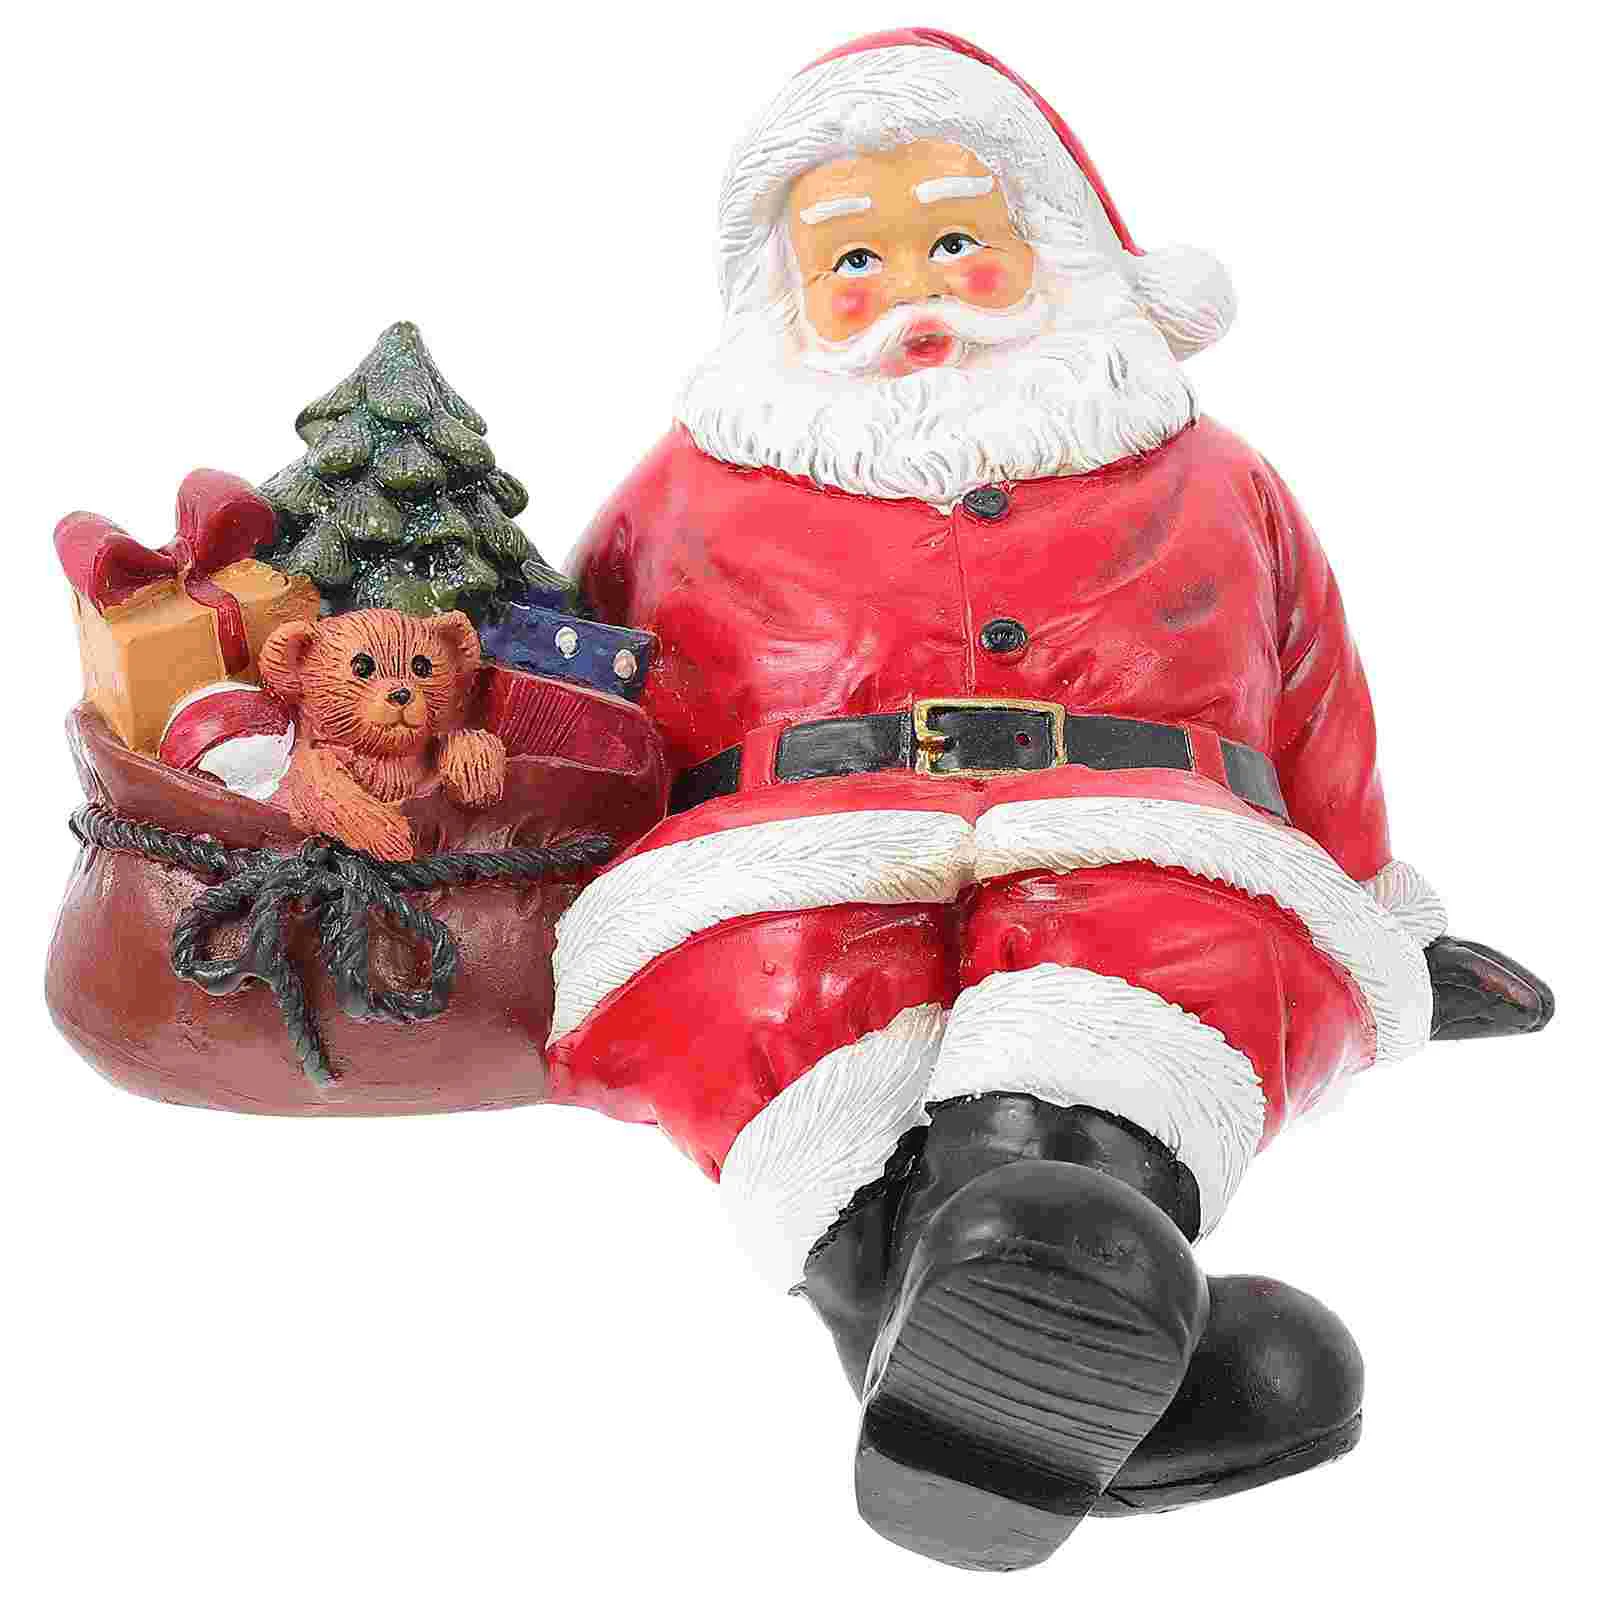 

Маленький подарок Санта-Клаус, украшение из смолы, рождественское настольное украшение Санта-Клауса